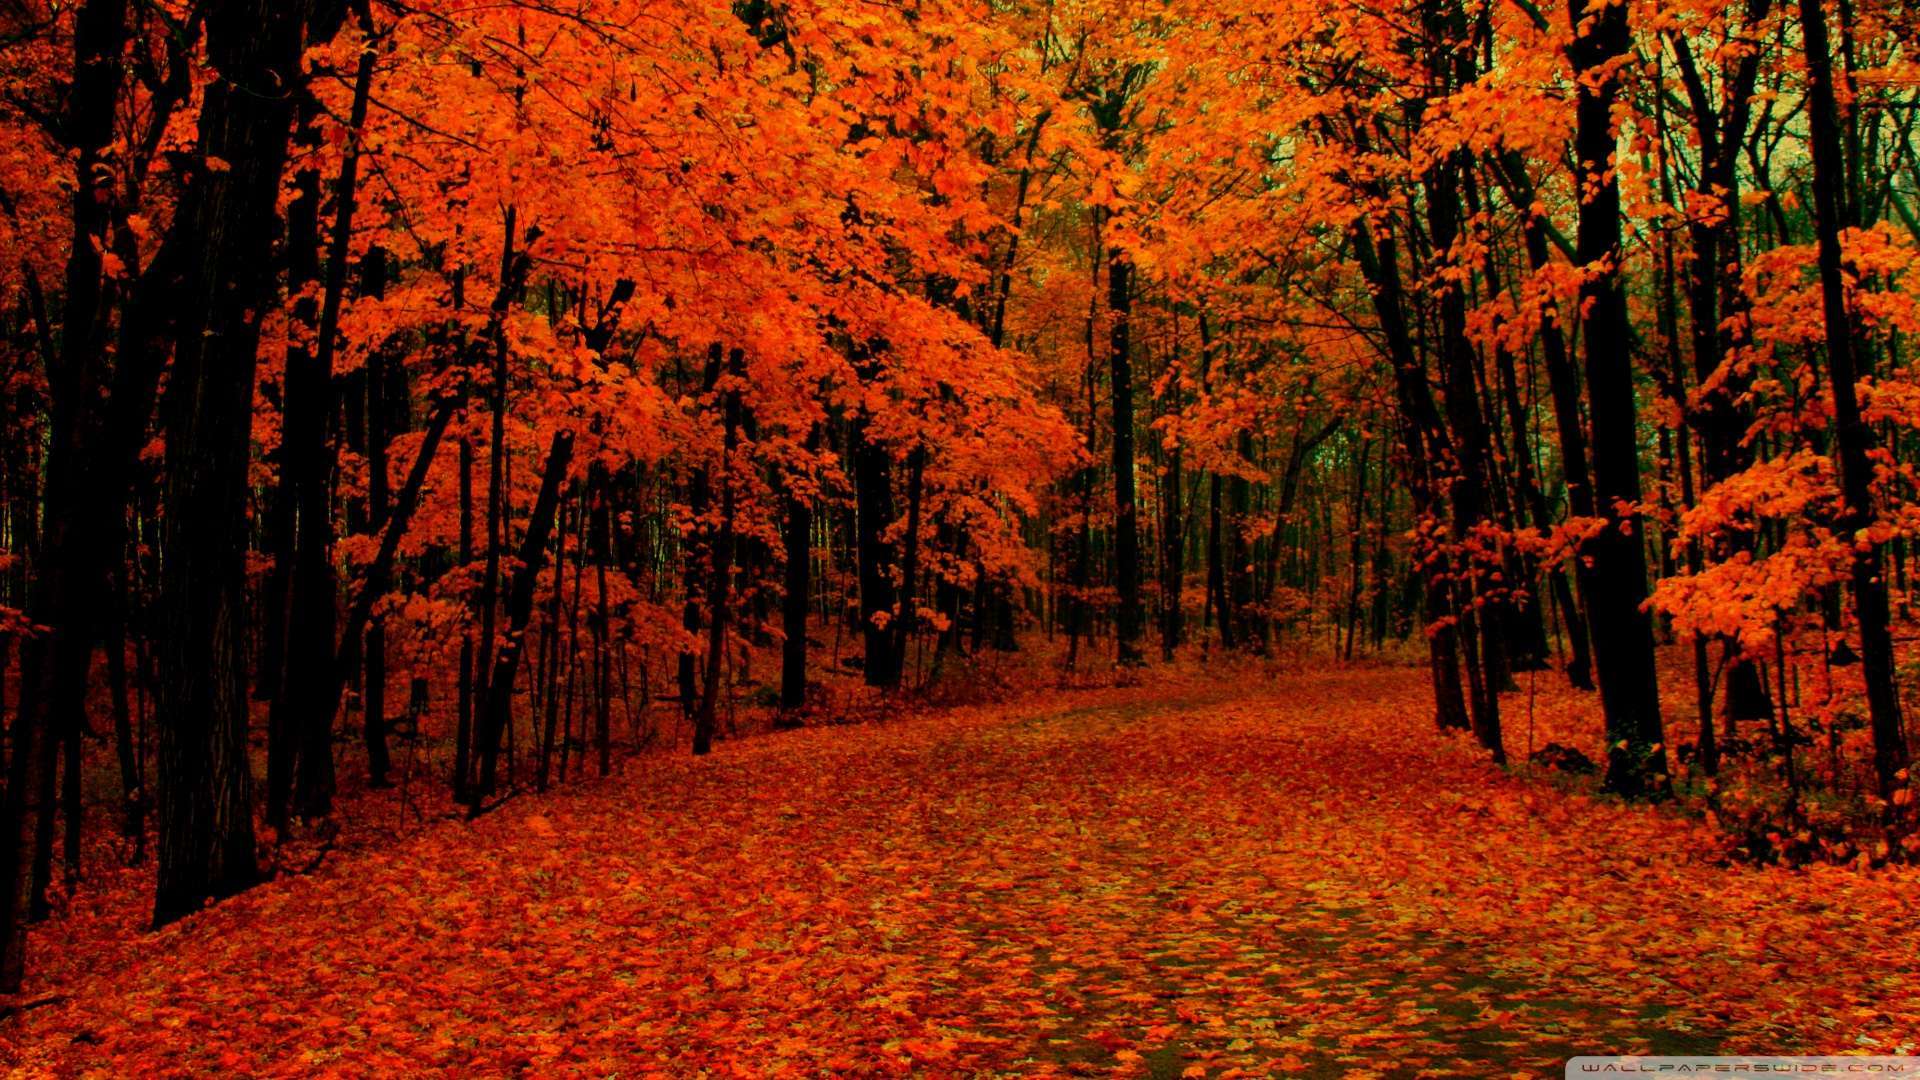 Fall Wallpaper, Descargar imagen de una imagen natural de árbol colorido